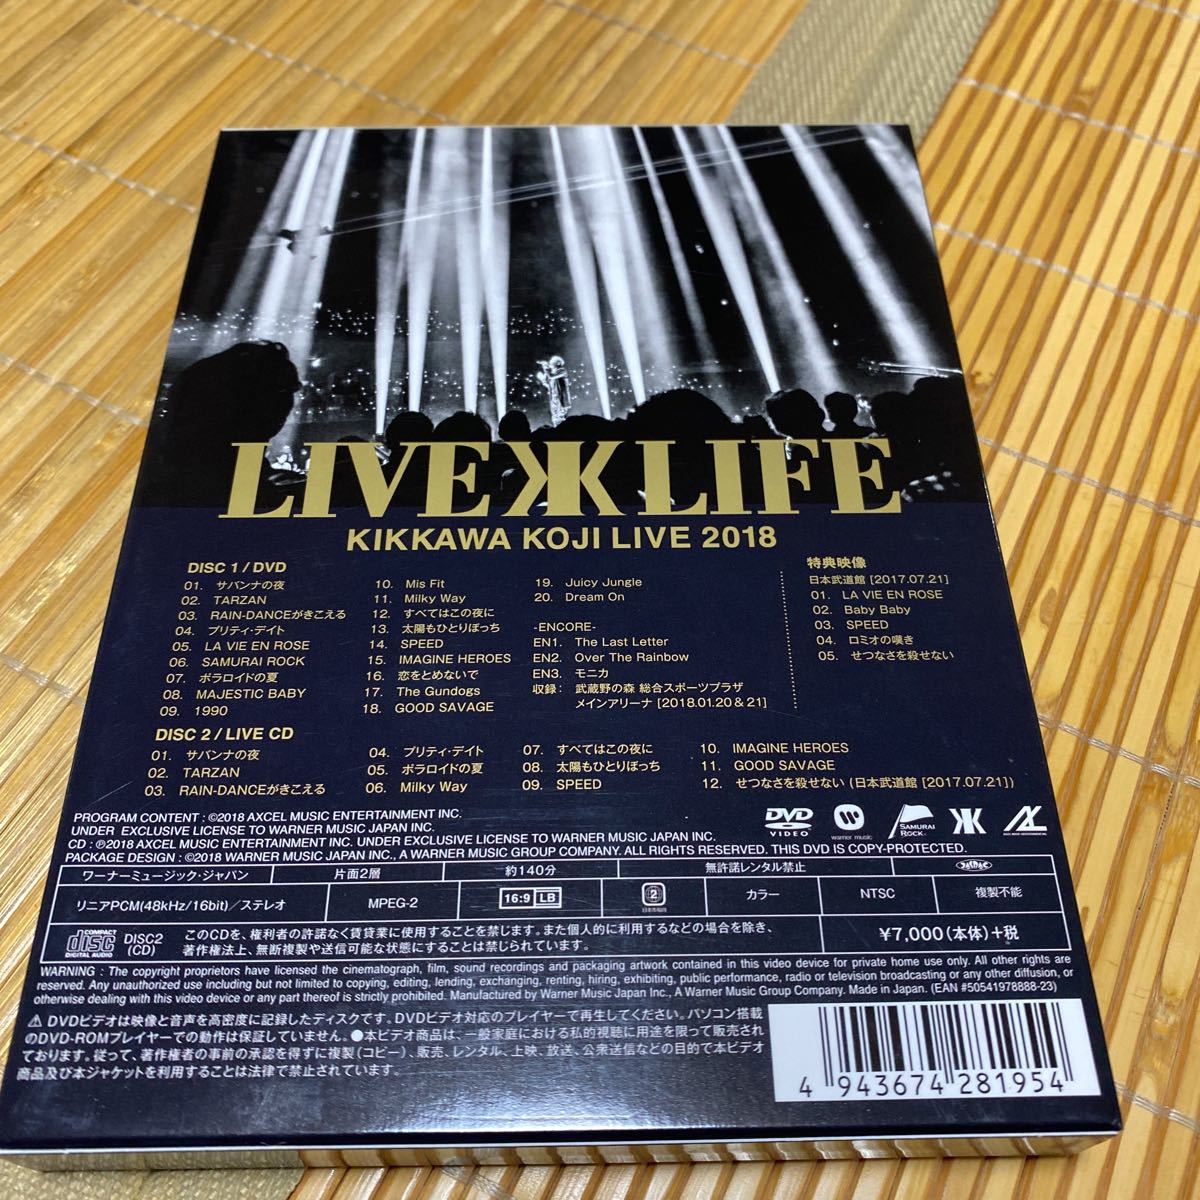 完全生産限定盤 吉川晃司 DVD+CD/KIKKAWA KOJI LIVE 2018 Live is Life